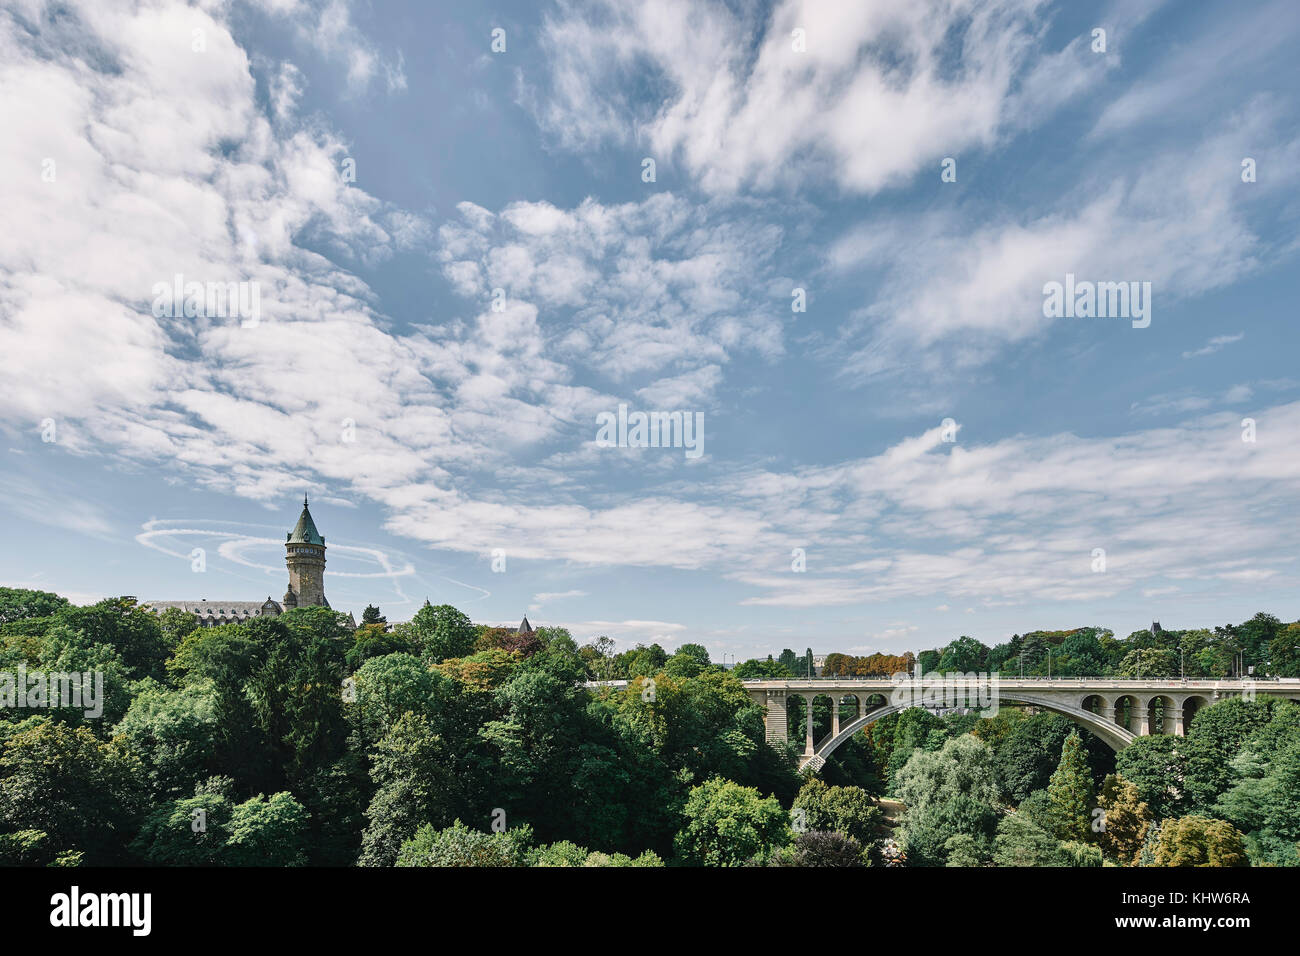 Bridge among tree tops, Luxembourg, Europe Stock Photo